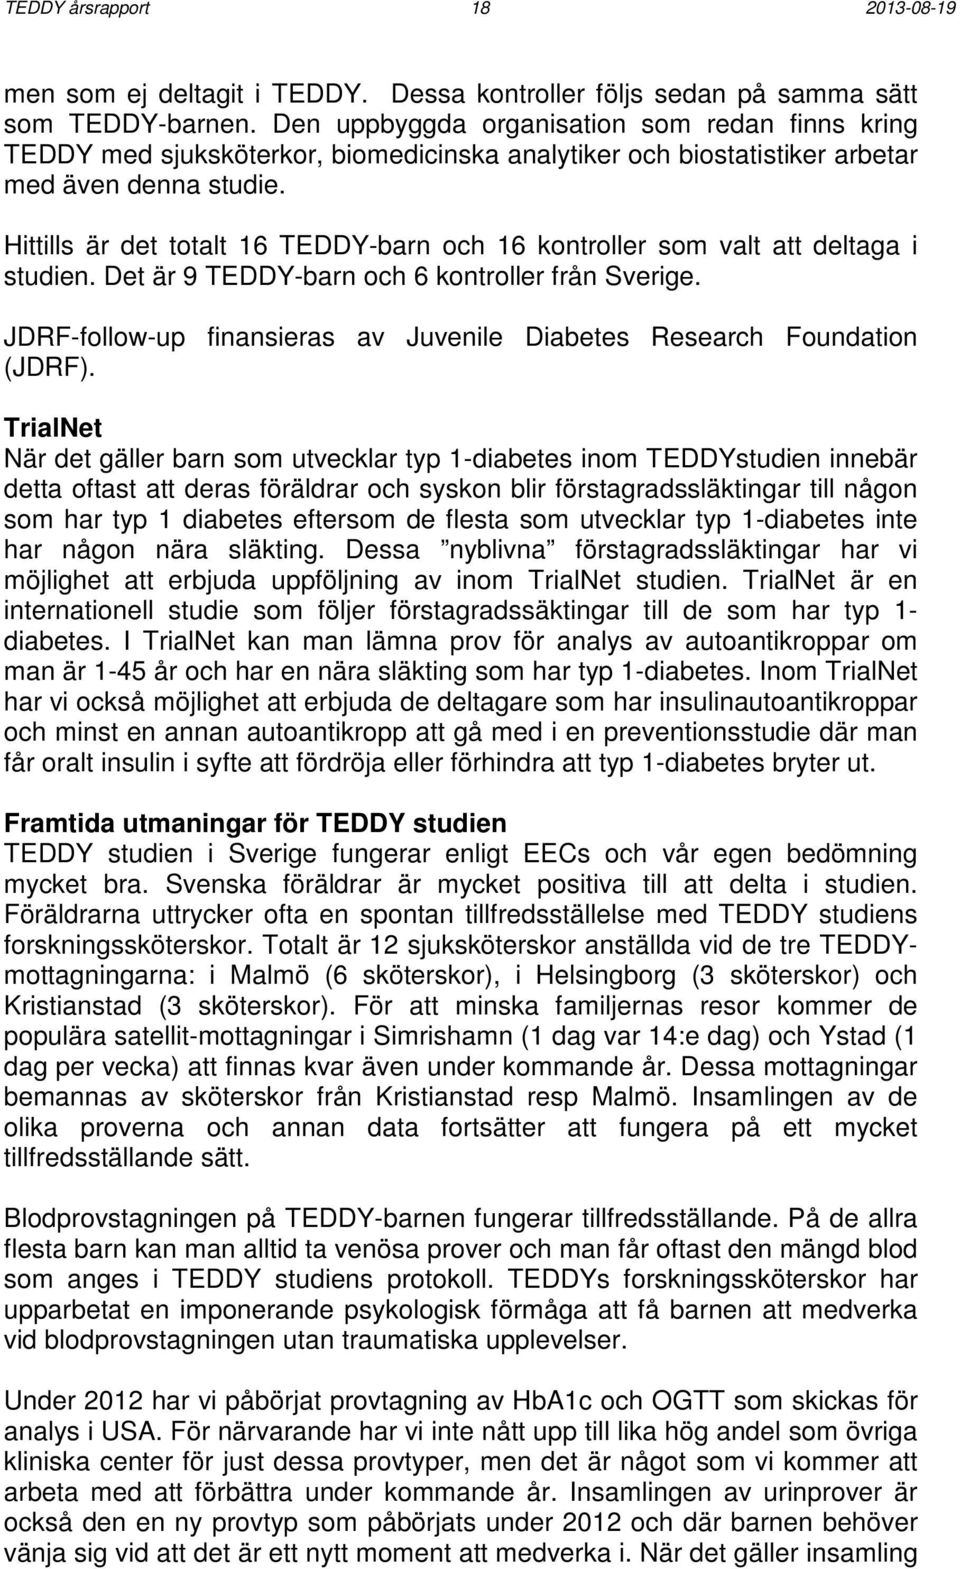 Hittills är det totalt 16 TEDDY-barn och 16 kontroller som valt att deltaga i studien. Det är 9 TEDDY-barn och 6 kontroller från Sverige.